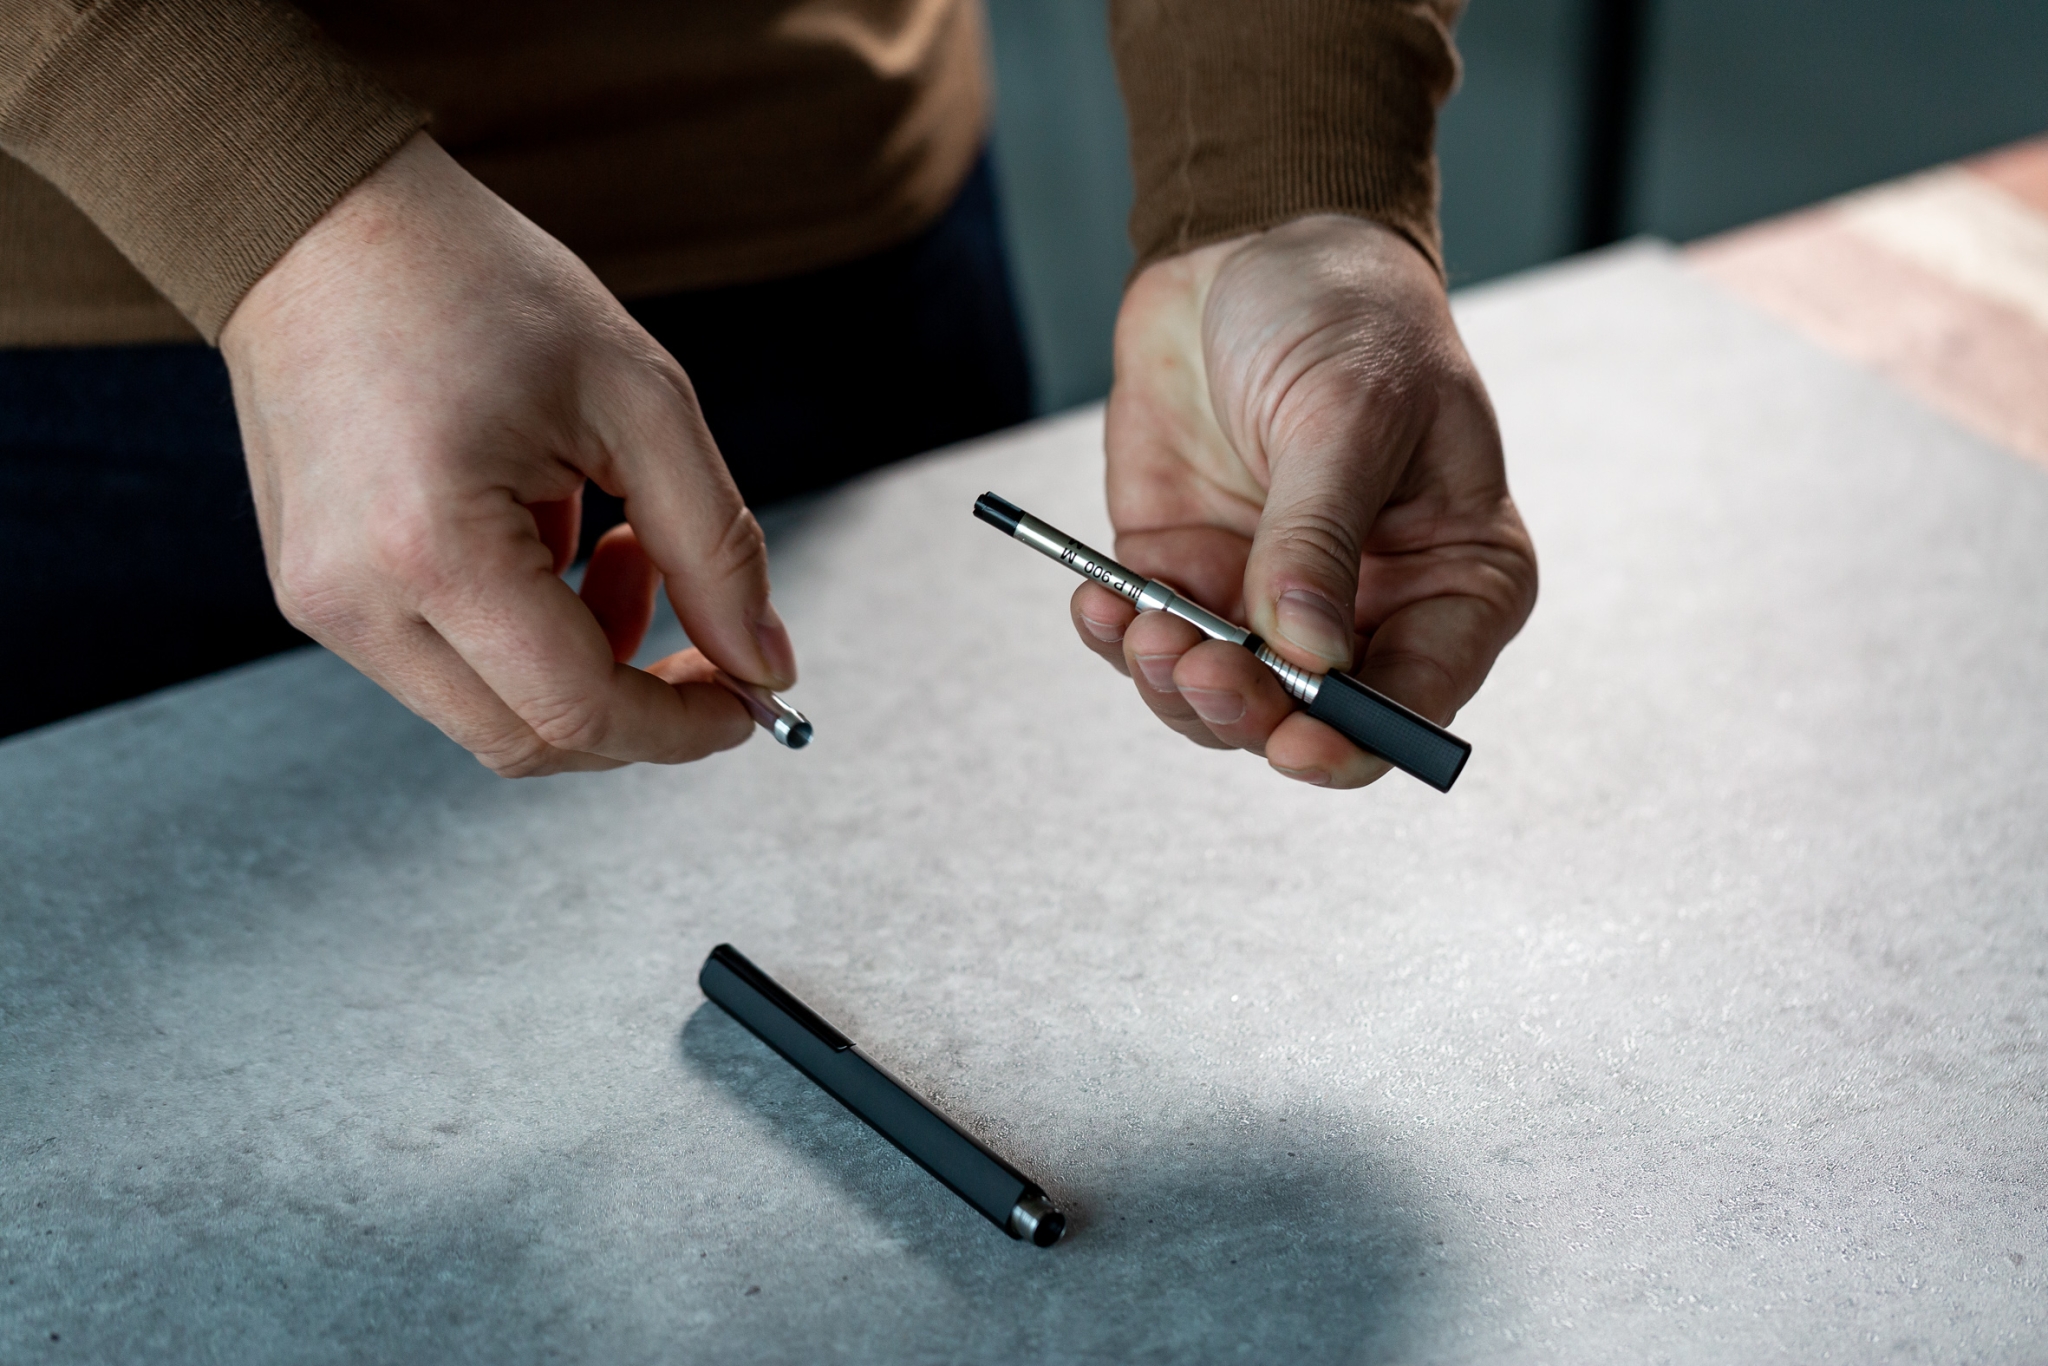 Шариковая ручка Pininfarina PF One BLACK, #000000, алюминий